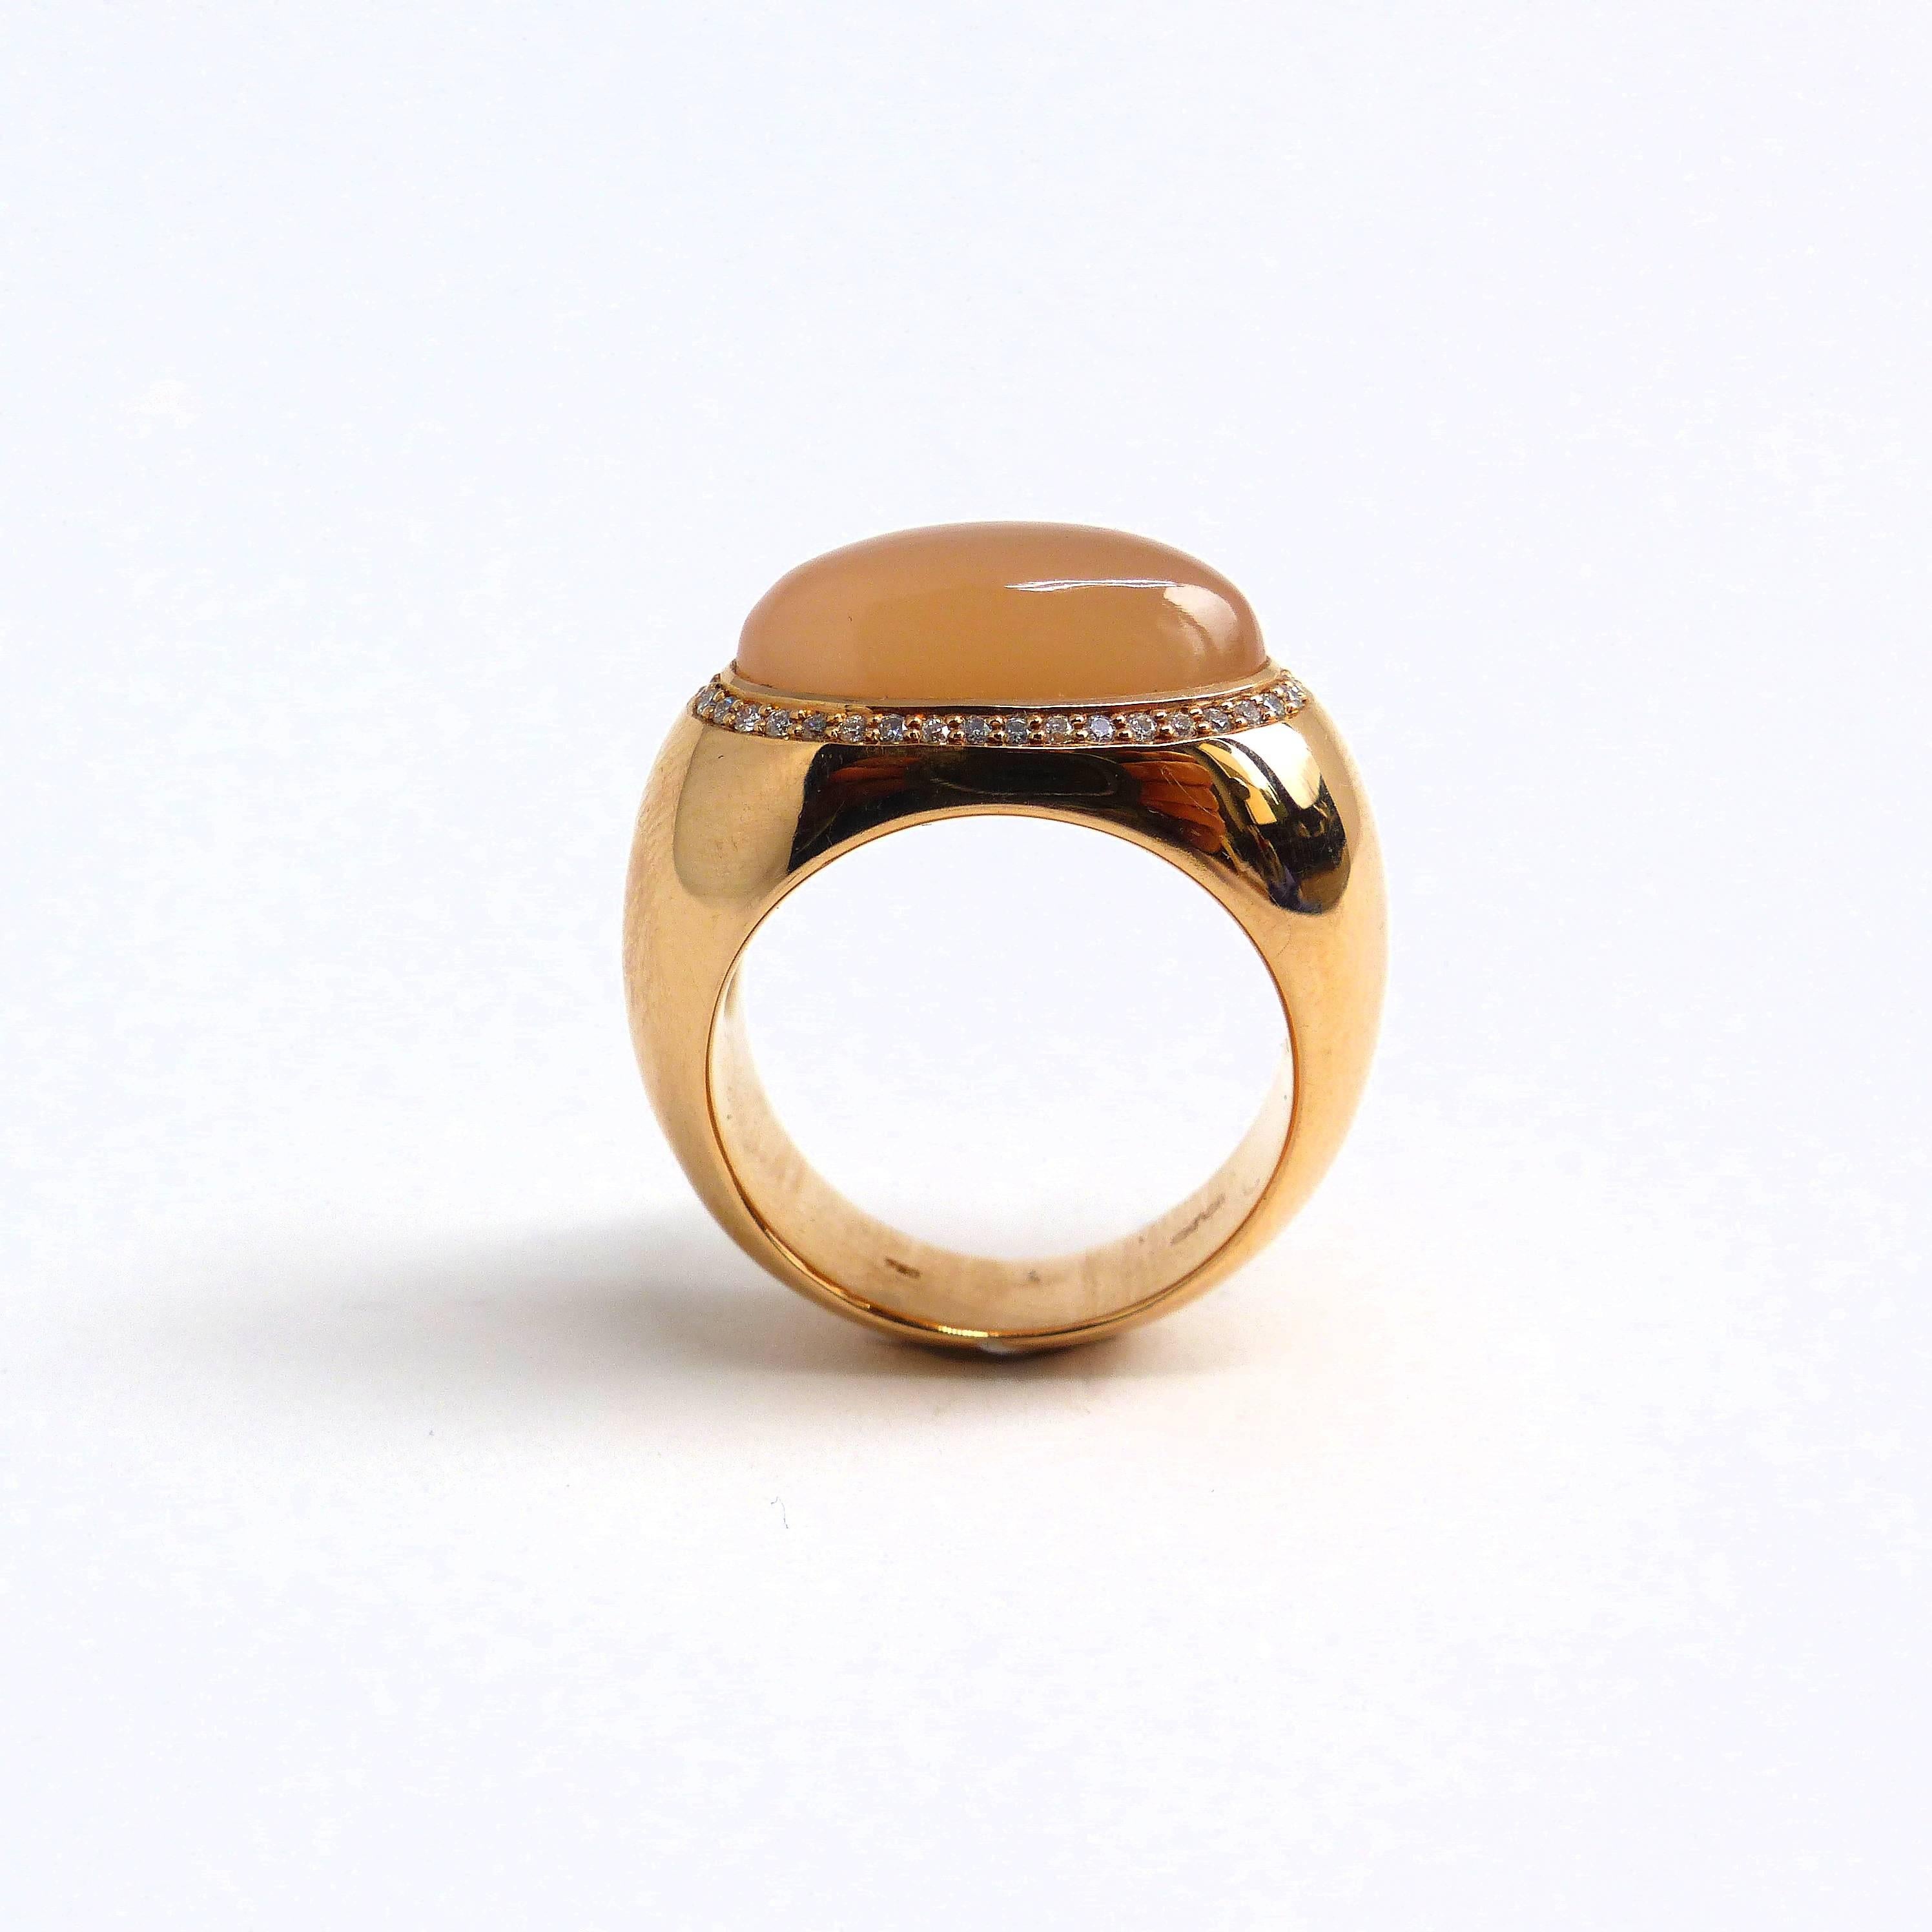 Thomas Leyser ist bekannt für seine zeitgenössischen Schmuckentwürfe mit edlen Farbedelsteinen und Diamanten.   

Dieser Ring aus 18 Karat Roségold ist mit 1x cremefarbenem Mondstein Cabouchon (oval, 16,5x8mm, 6,85ct) + 32x Diamanten